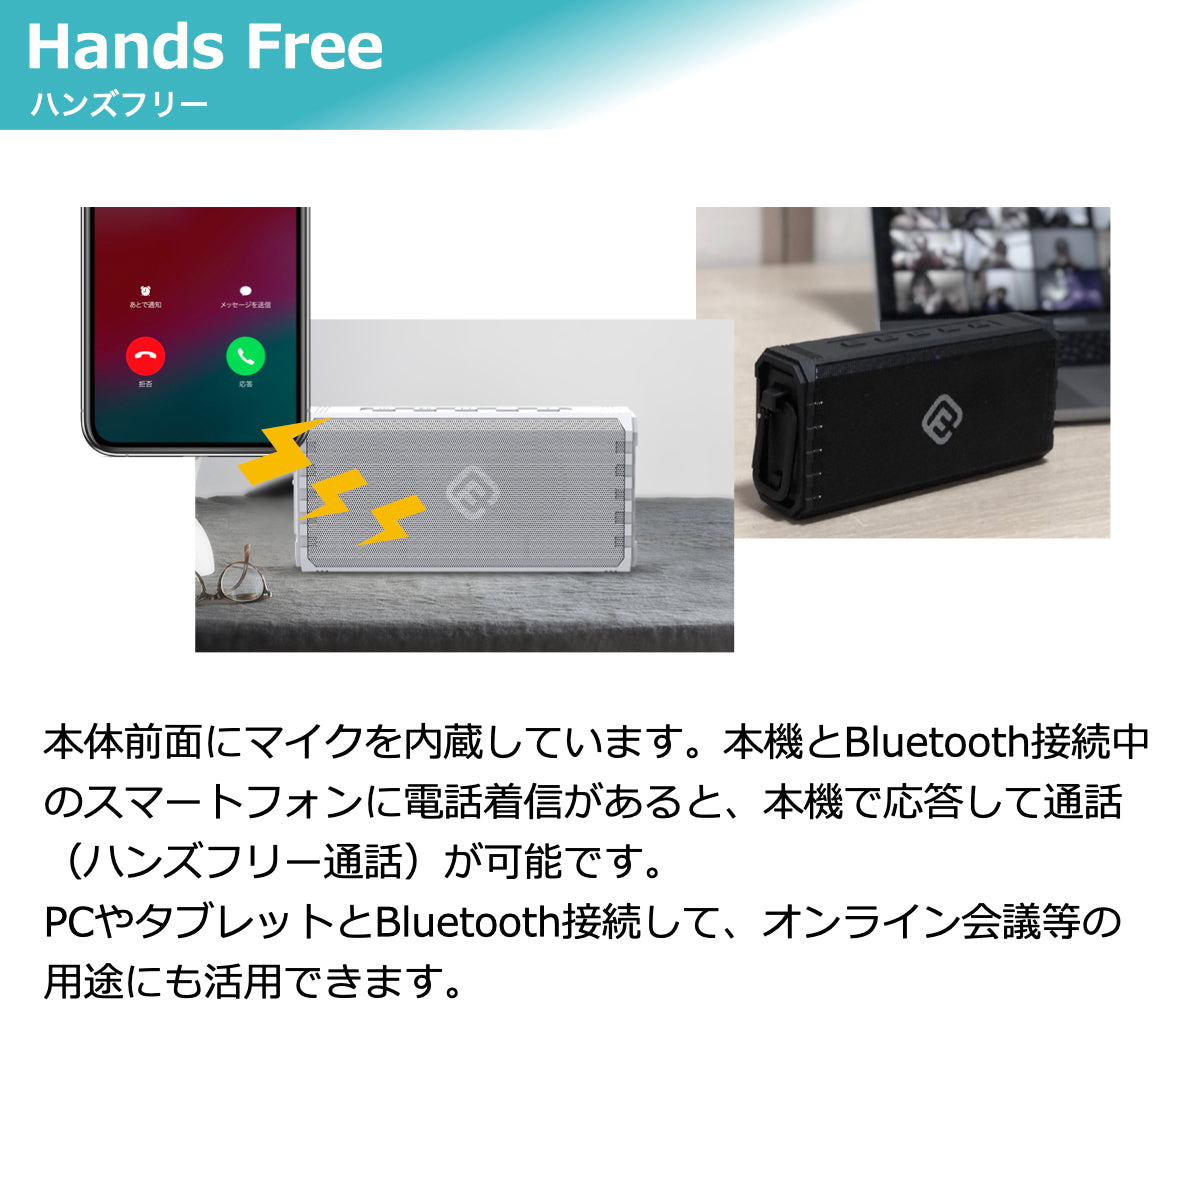 【新品未開封品】ワイヤレススピーカー Bluetooth接続ハンズフリー通話可能